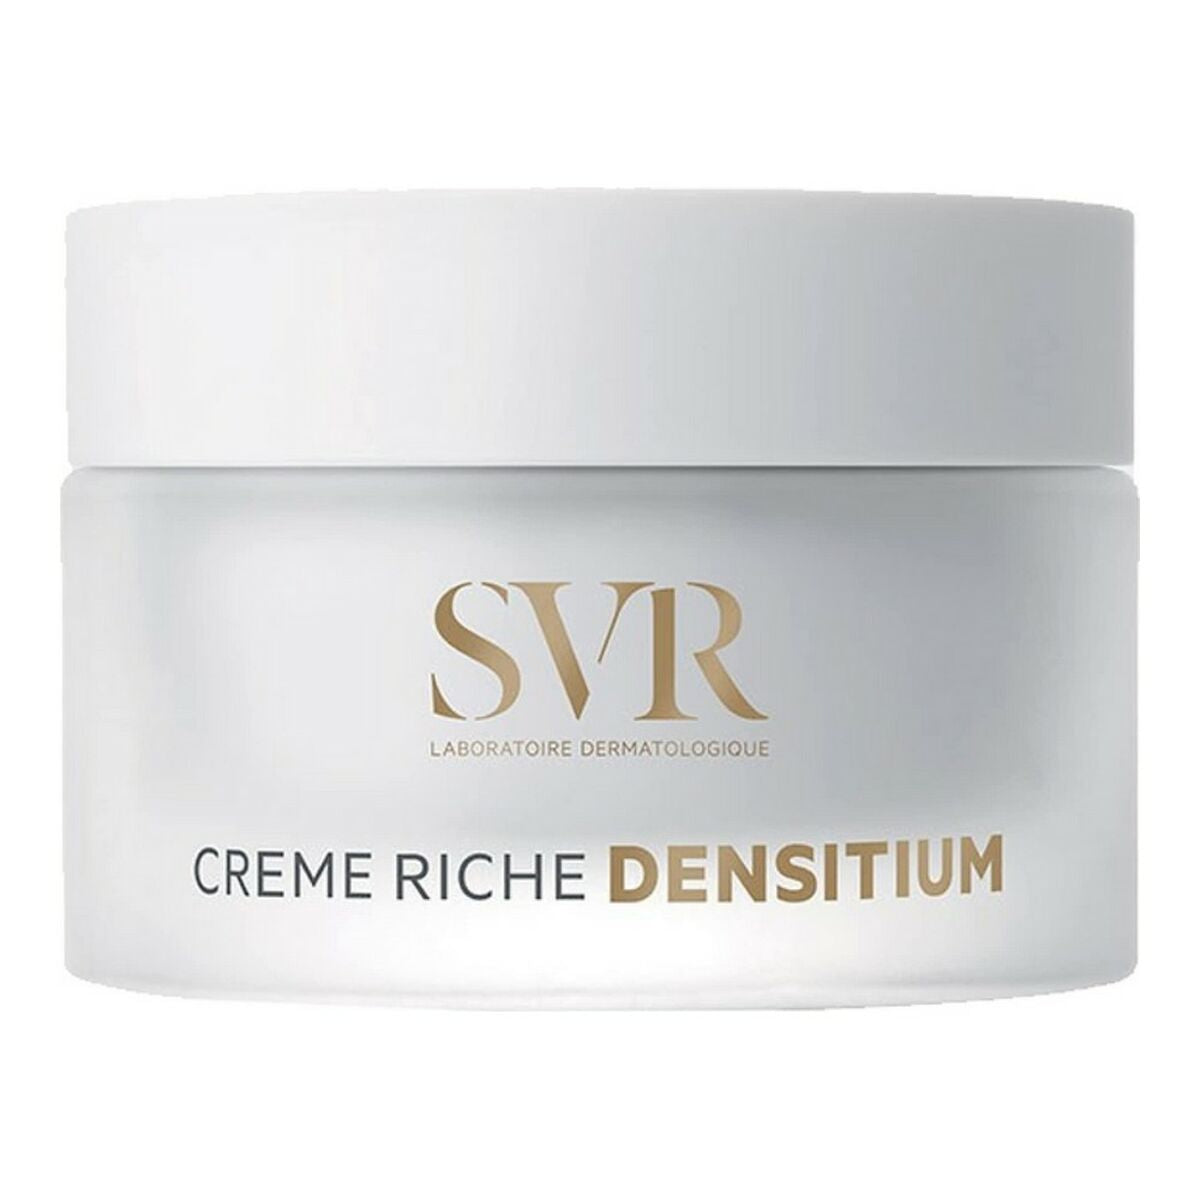 Texture Correcting Cream SVR Densitium 50 ml